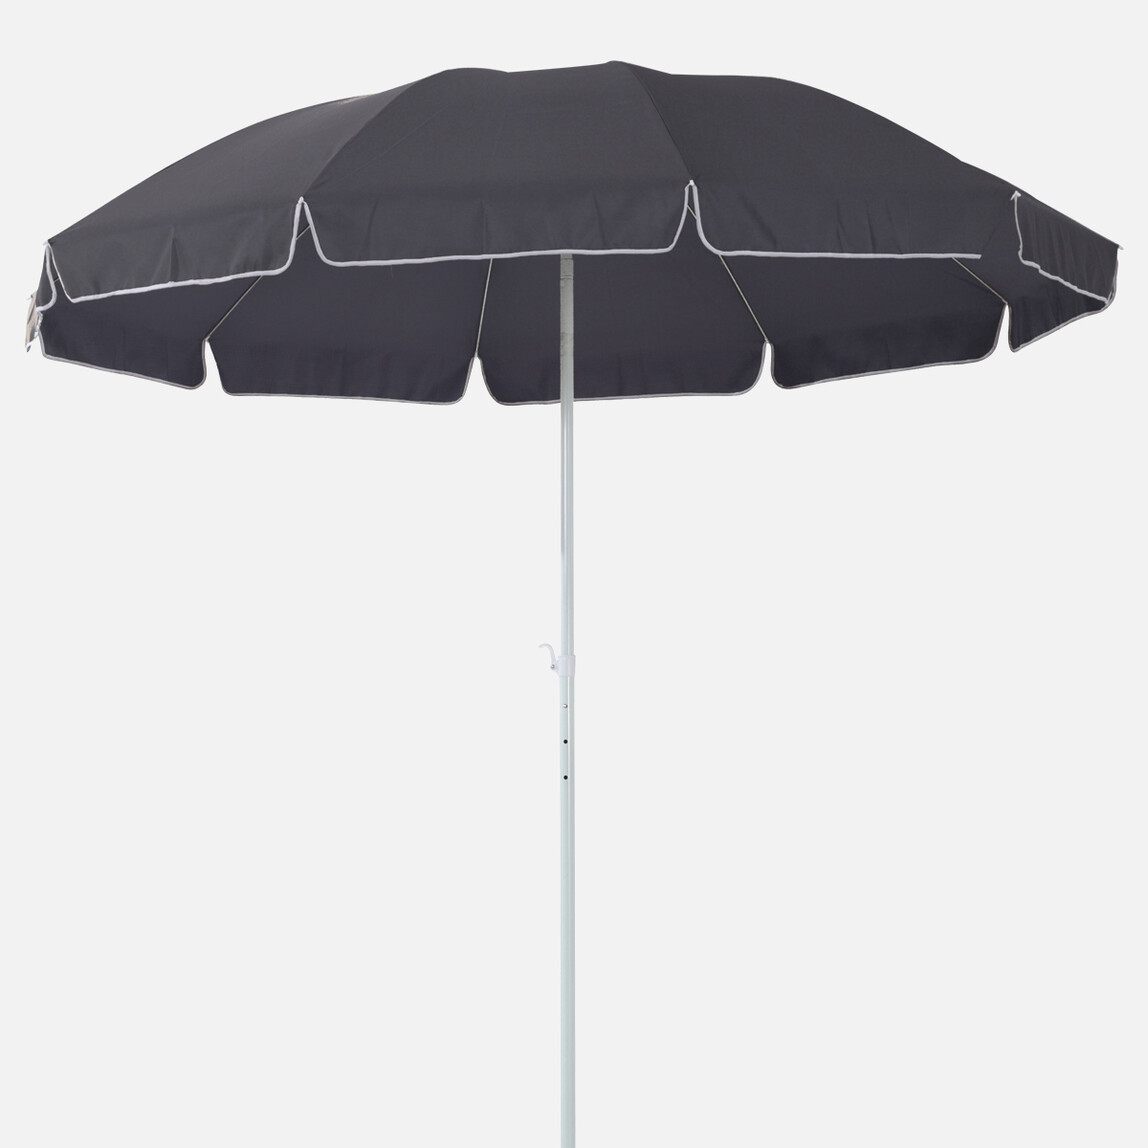    Sunfun Provence II Şemsiye Antrasit 200 cm  